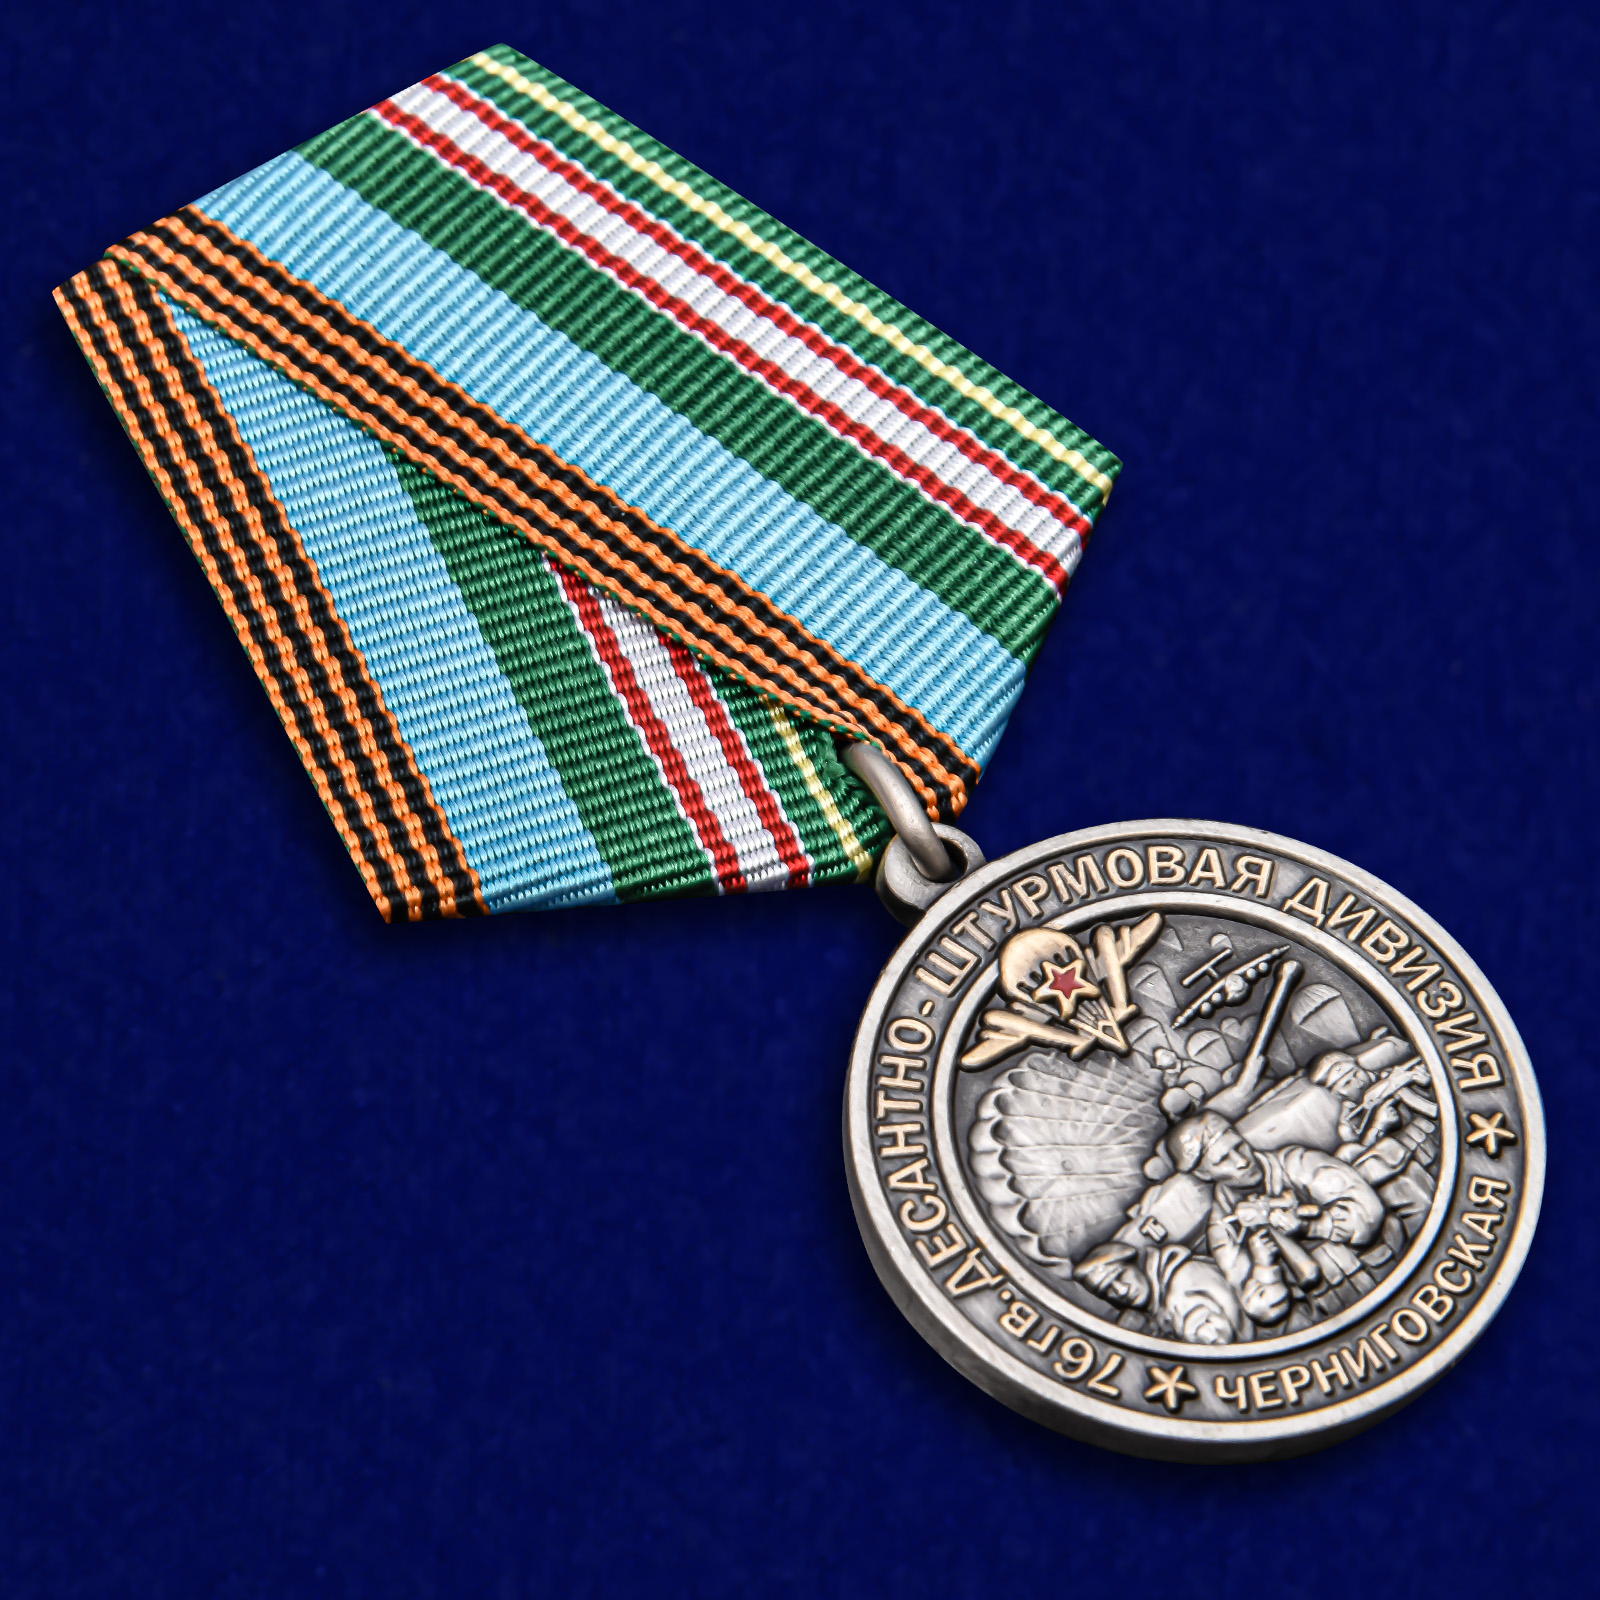 Памятная медаль "76-я гв. Десантно-штурмовая дивизия" 